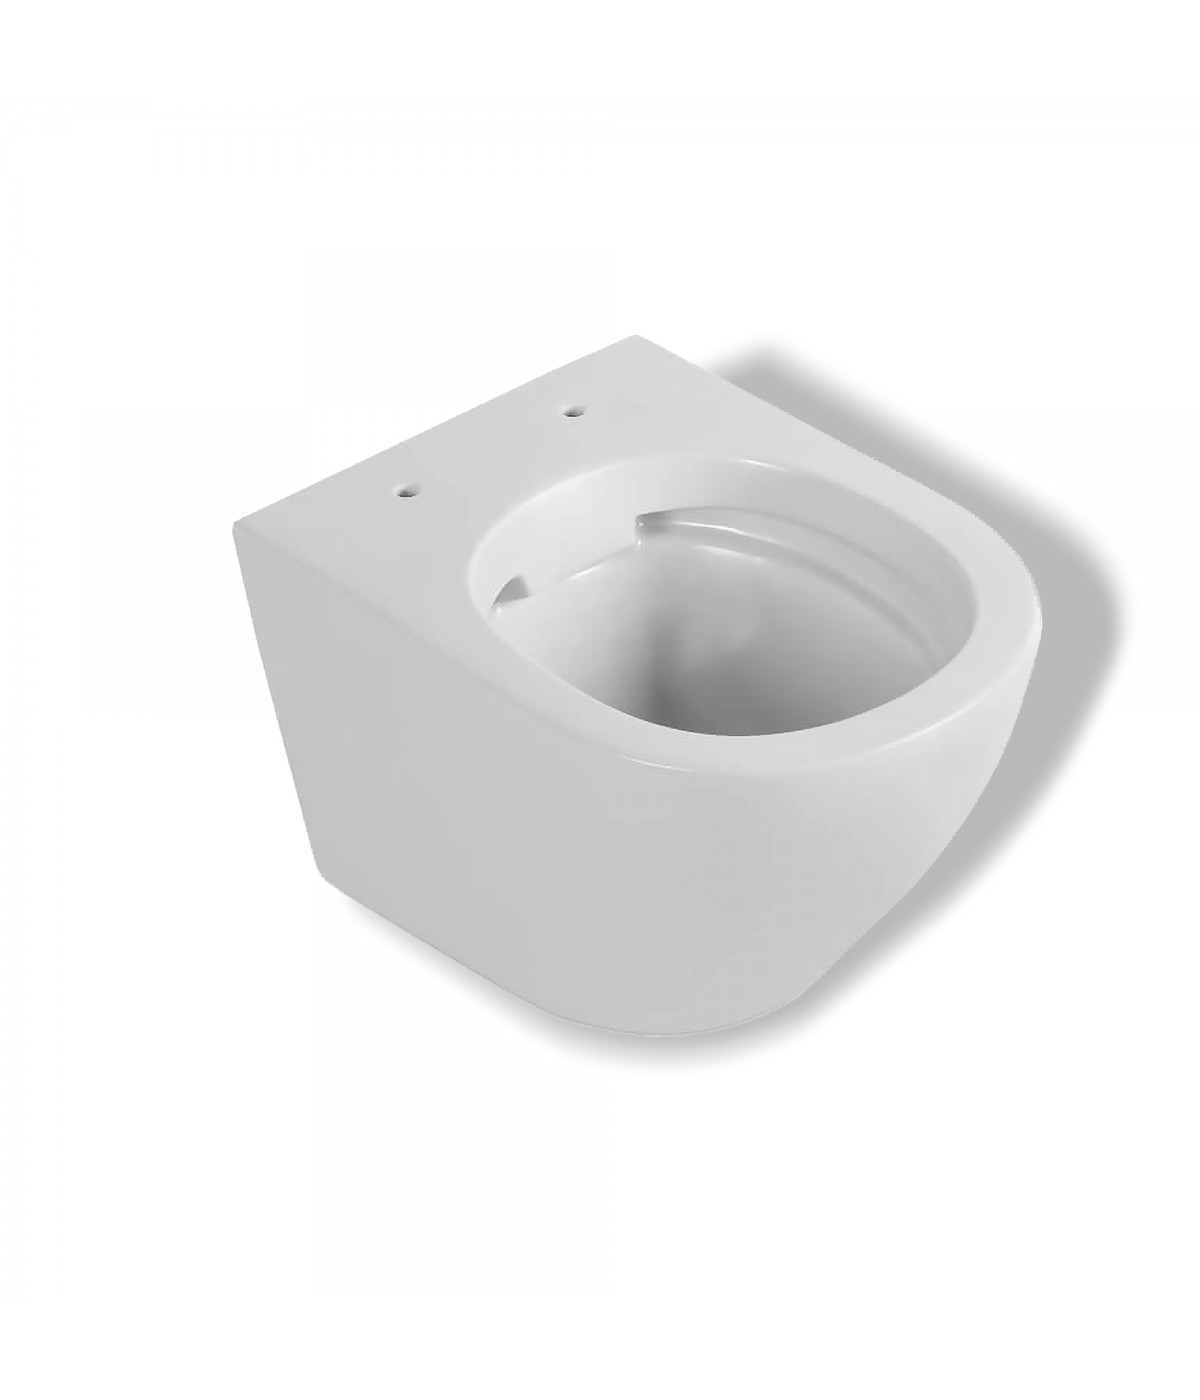 https://badland24.de/8586-large_default/set-wc-vorwandelement-duofix-wc-toilette-slim-soft-close-desna-weiss-schallschutzmatte-wc-betaetigungsplatte-weiss.jpg